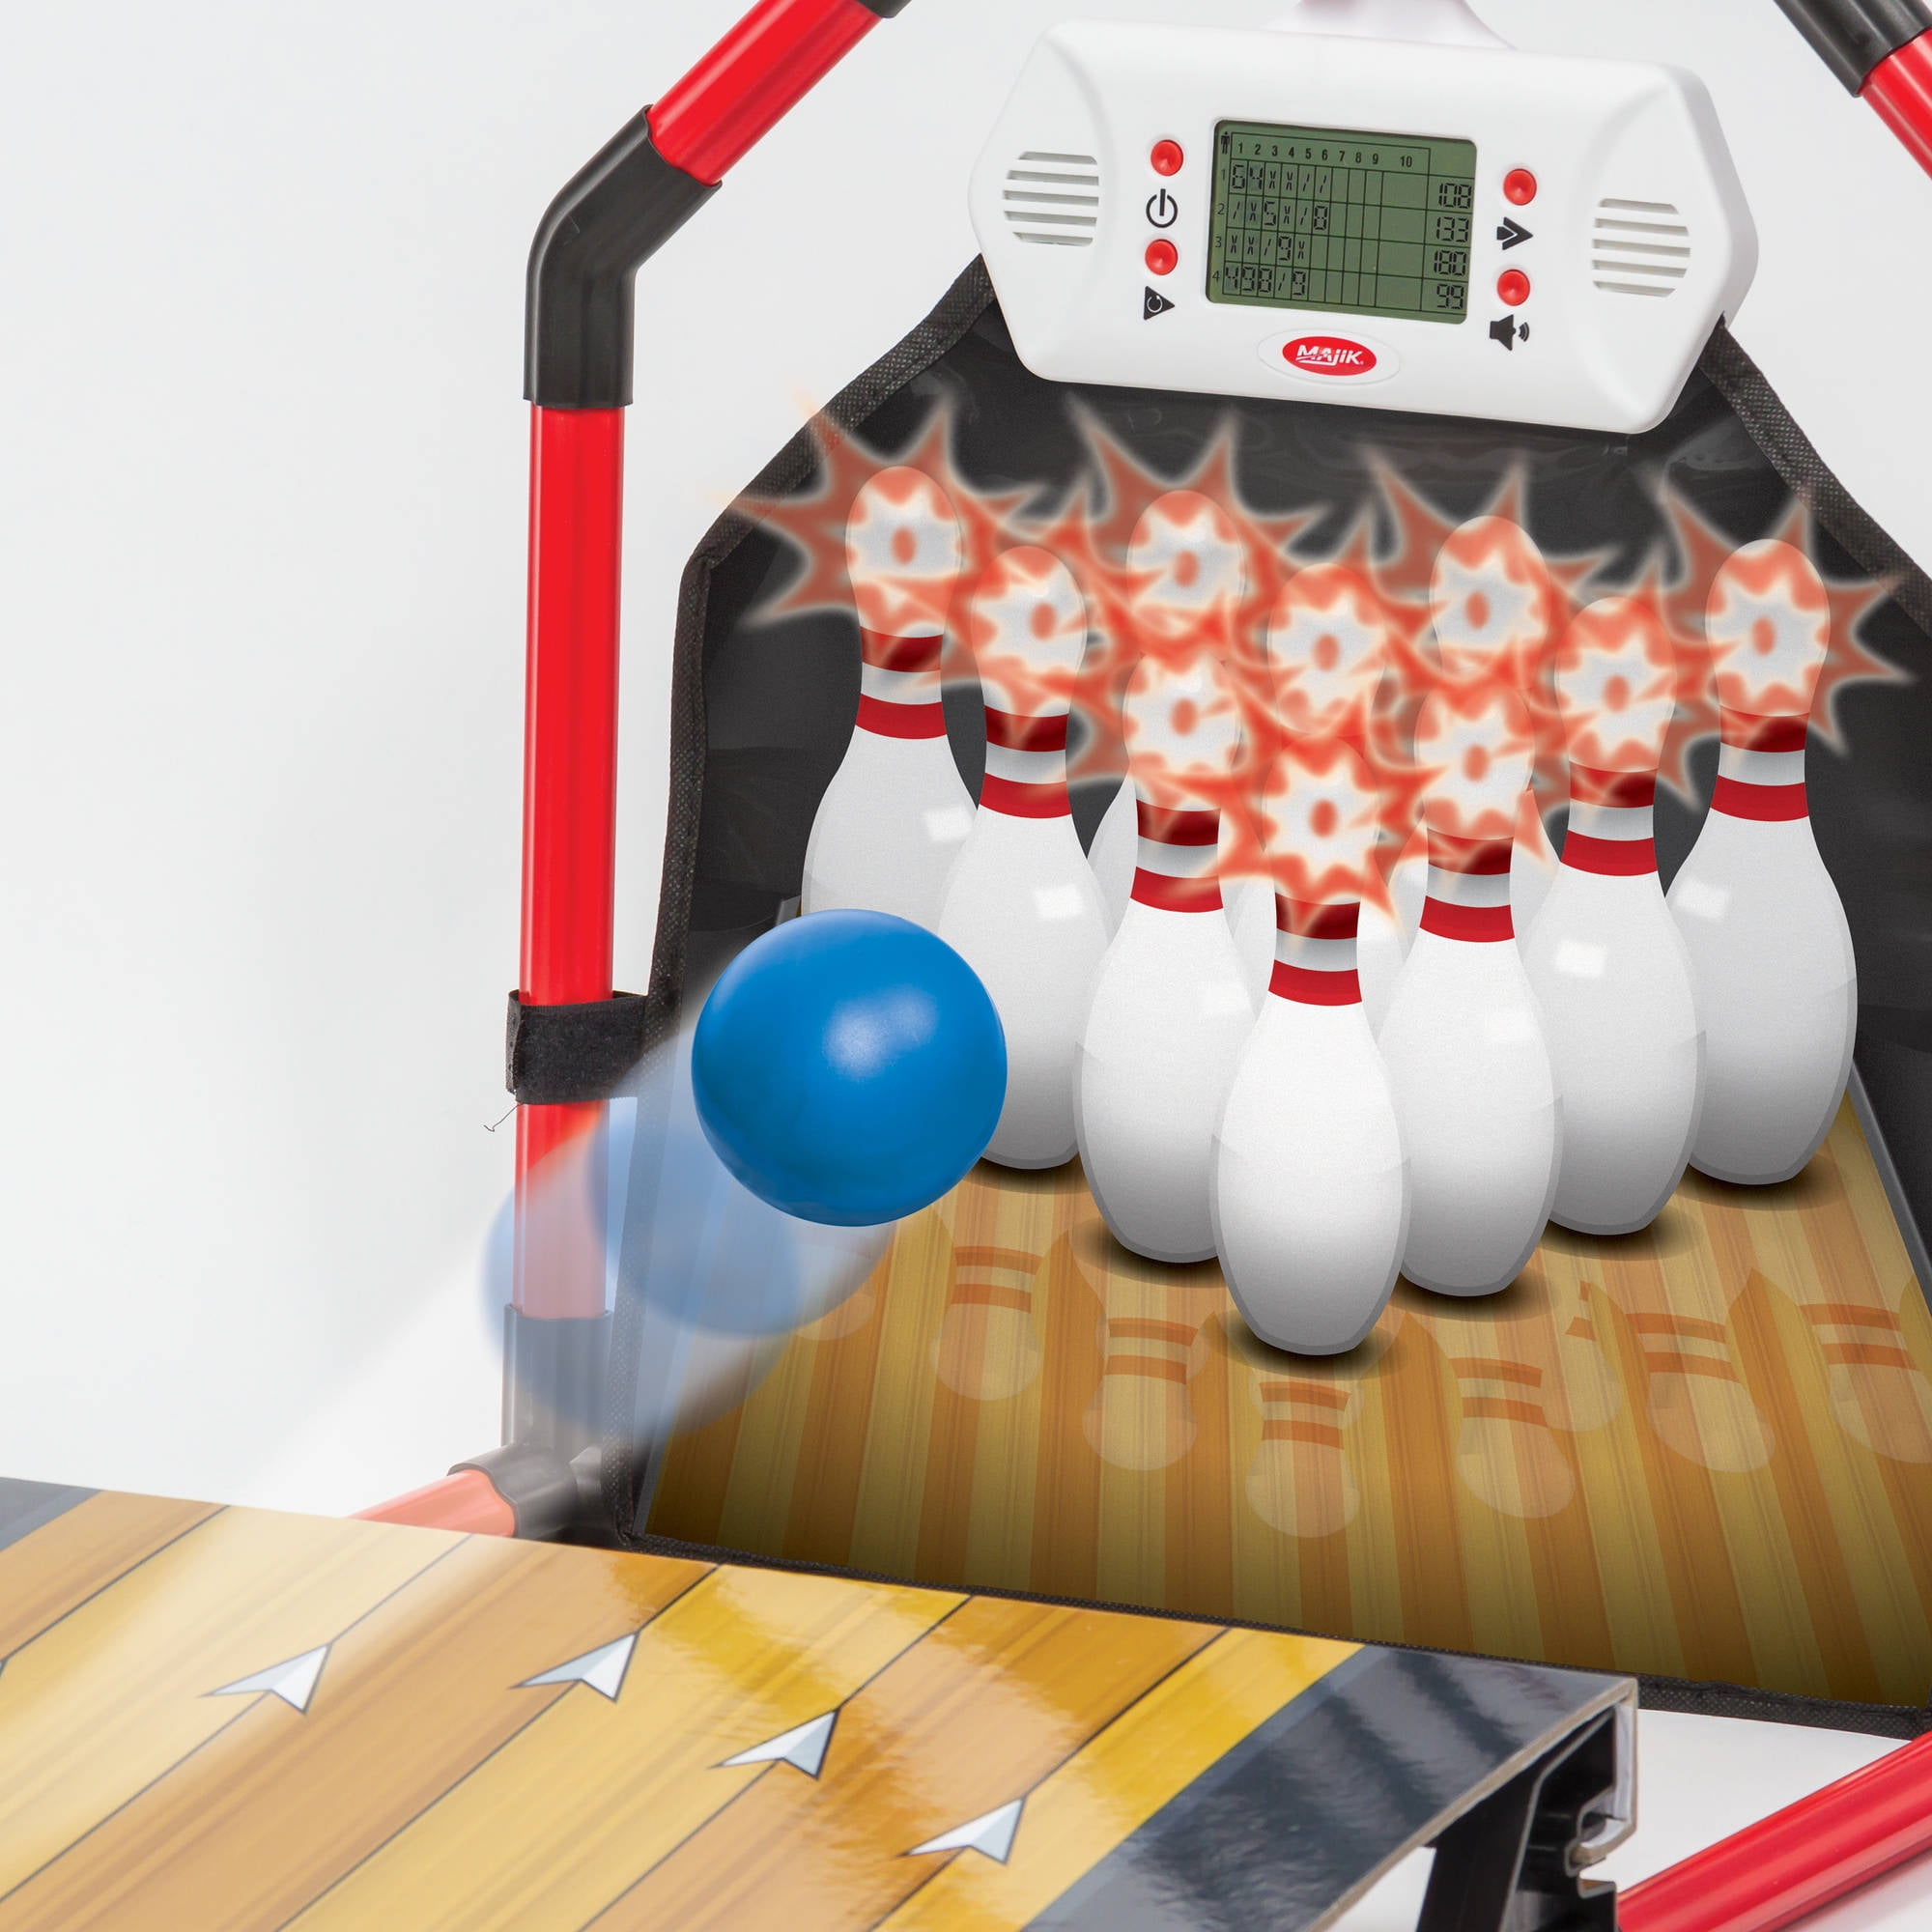 majik electronic arcade bowling game